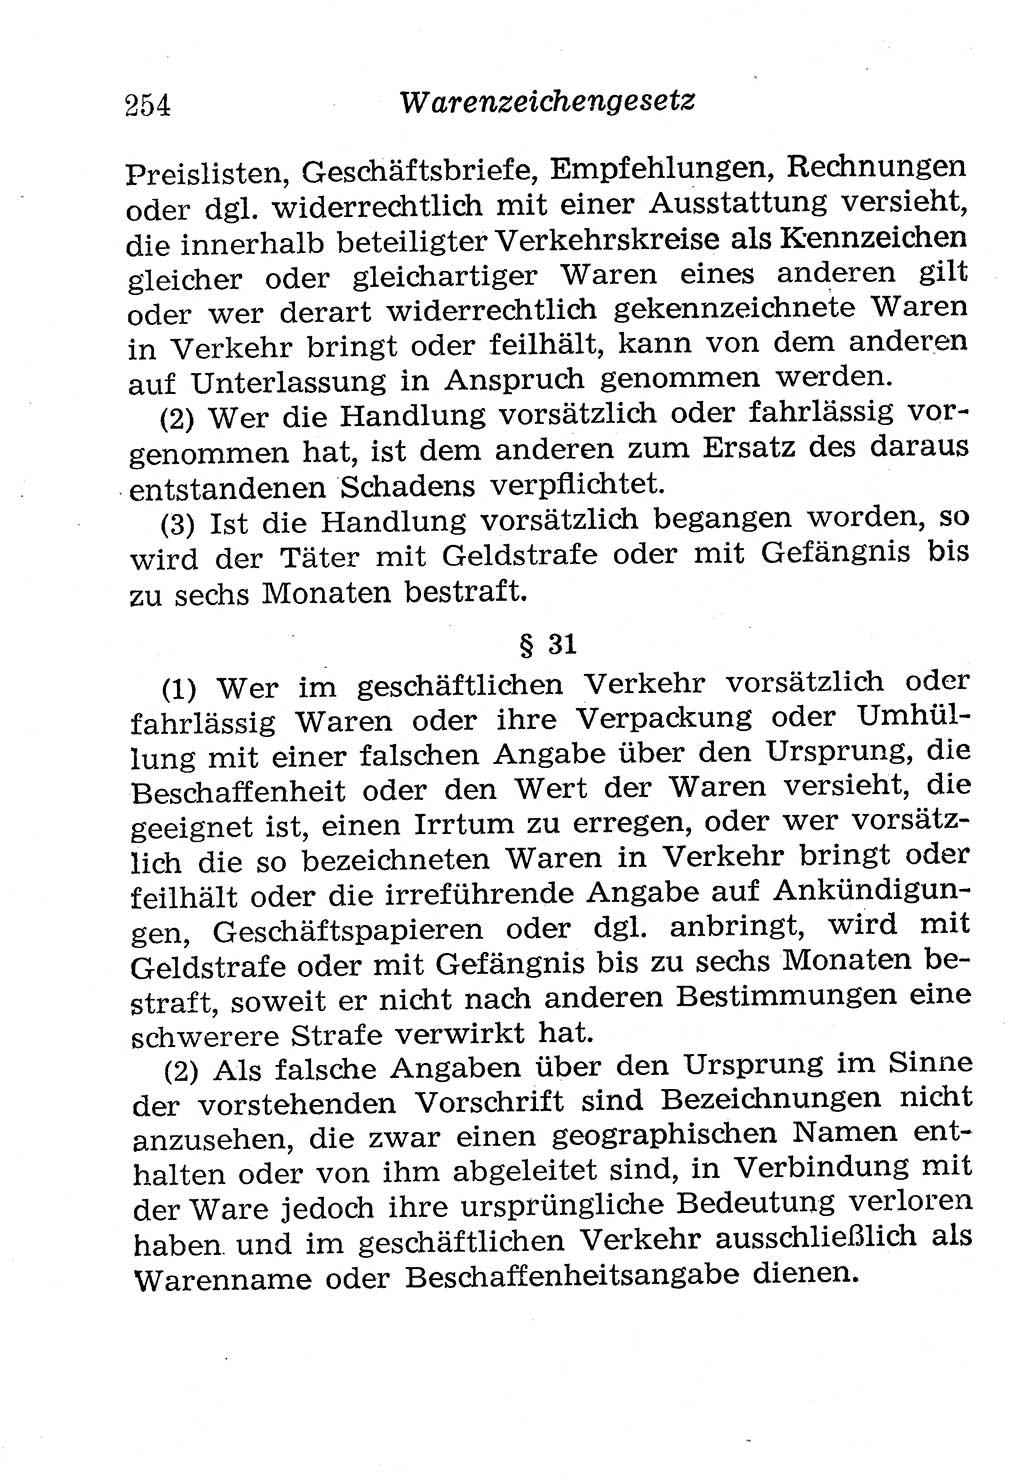 Strafgesetzbuch (StGB) und andere Strafgesetze [Deutsche Demokratische Republik (DDR)] 1958, Seite 254 (StGB Strafges. DDR 1958, S. 254)